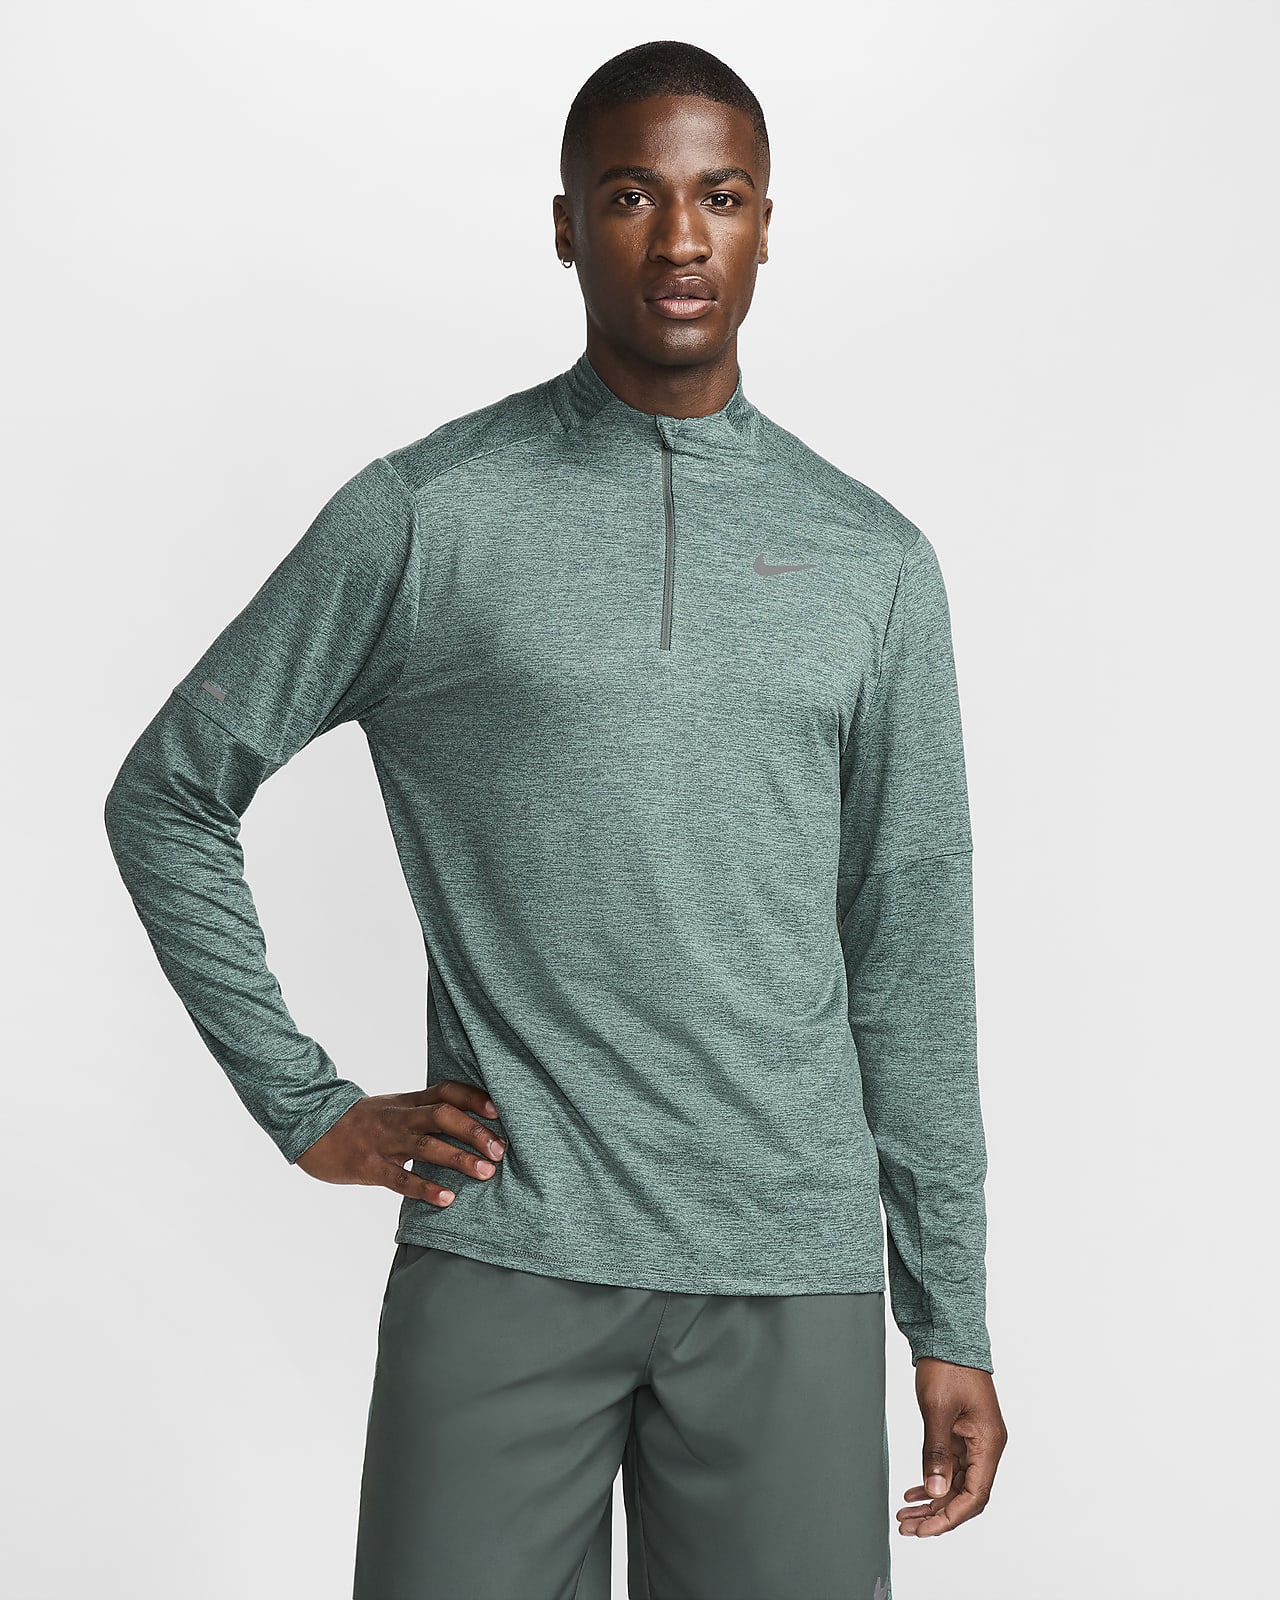 Ανδρική μπλούζα Dri-FIT για τρέξιμο με φερμουάρ στο μισό μήκος Nike